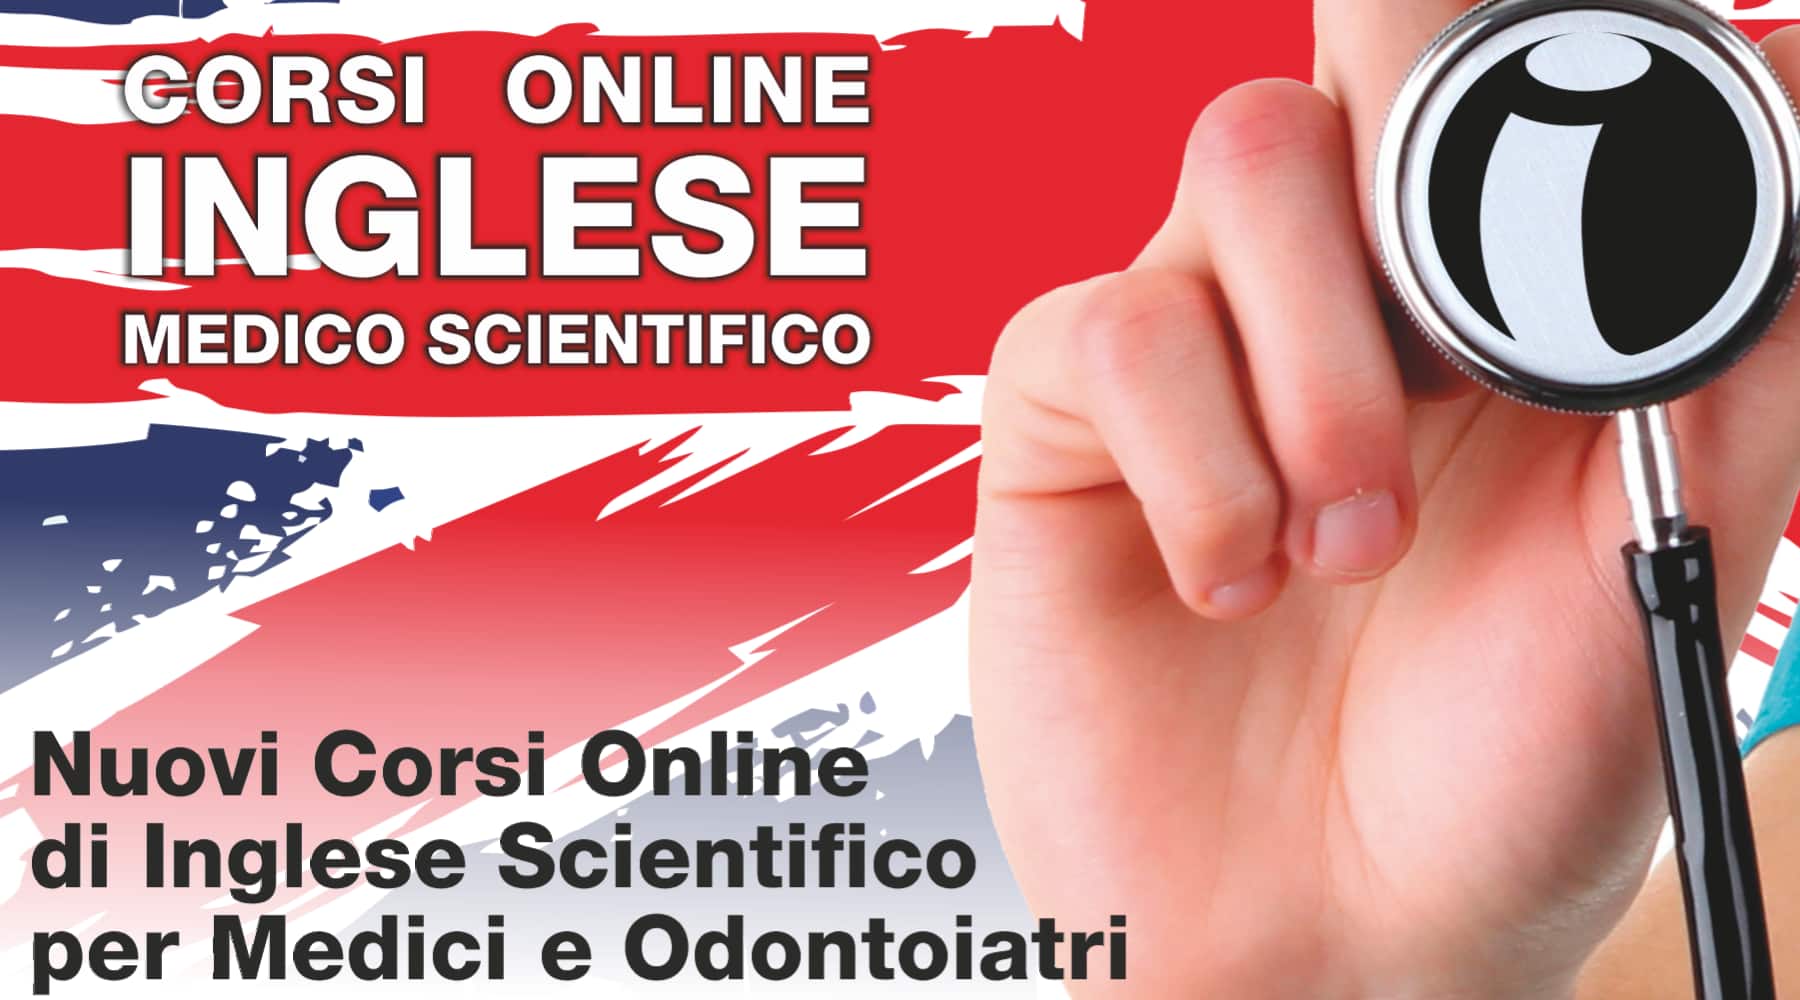 Clicca per accedere all'articolo “English for Doctors” - Corsi online di Inglese Medico Scientifico 